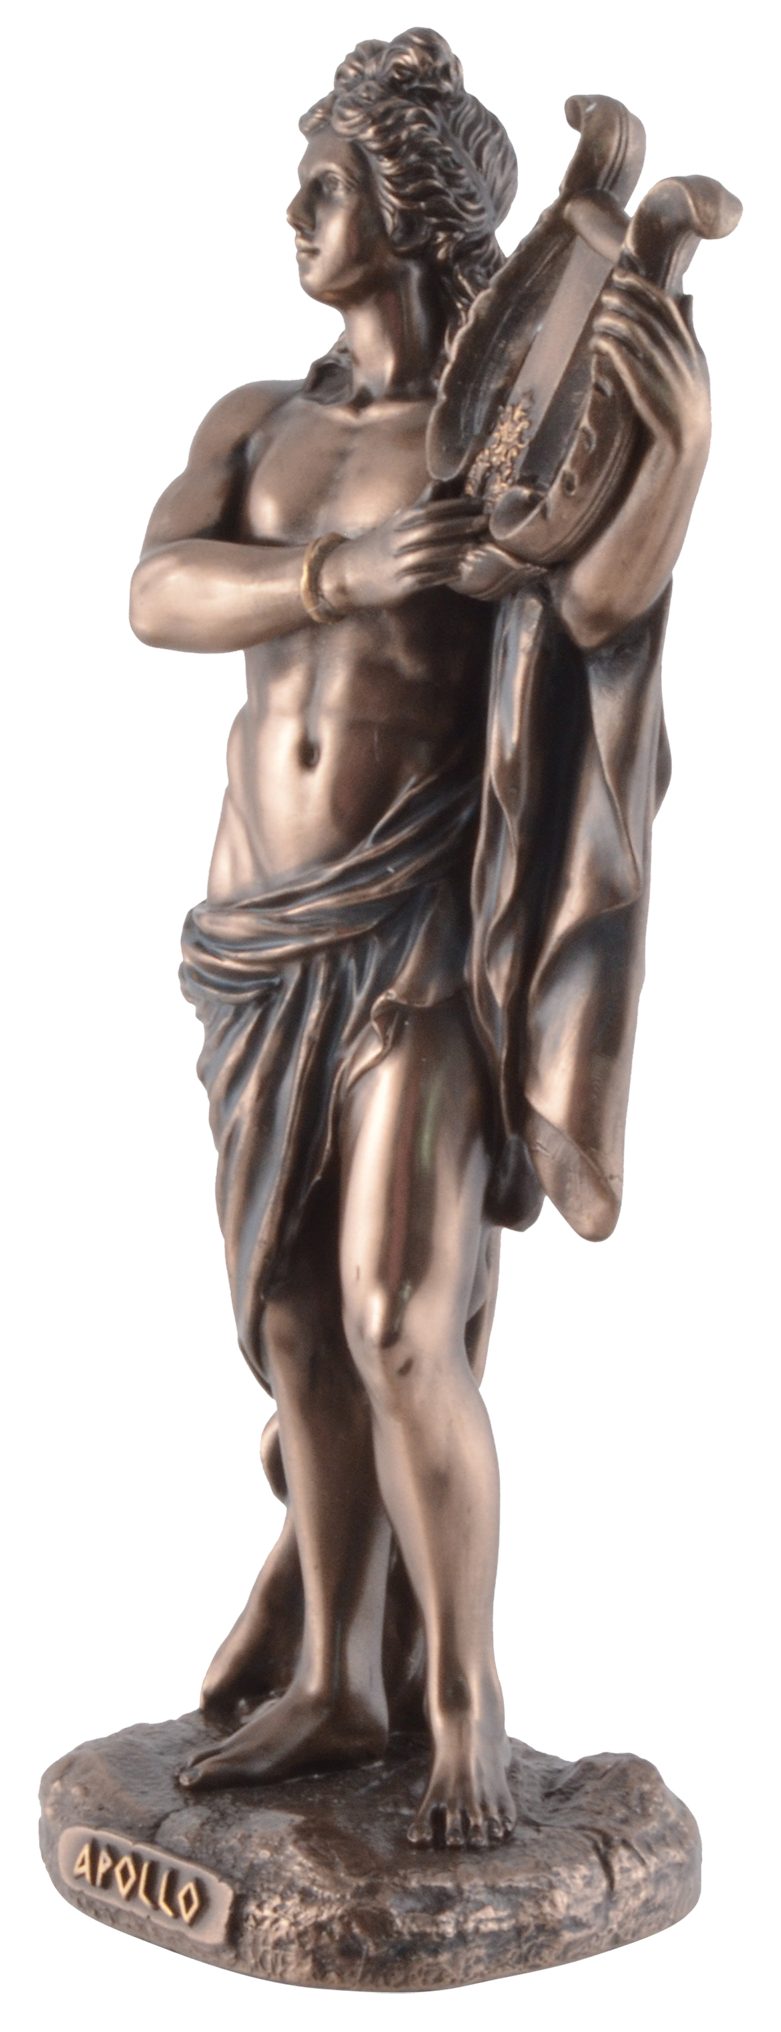 7x5x16cm Dekofigur Größe: bronziert/coloriert, Griechischer Gott Apollo, ca. Vogler L/B/H Veronesedesign, Gmbh direct